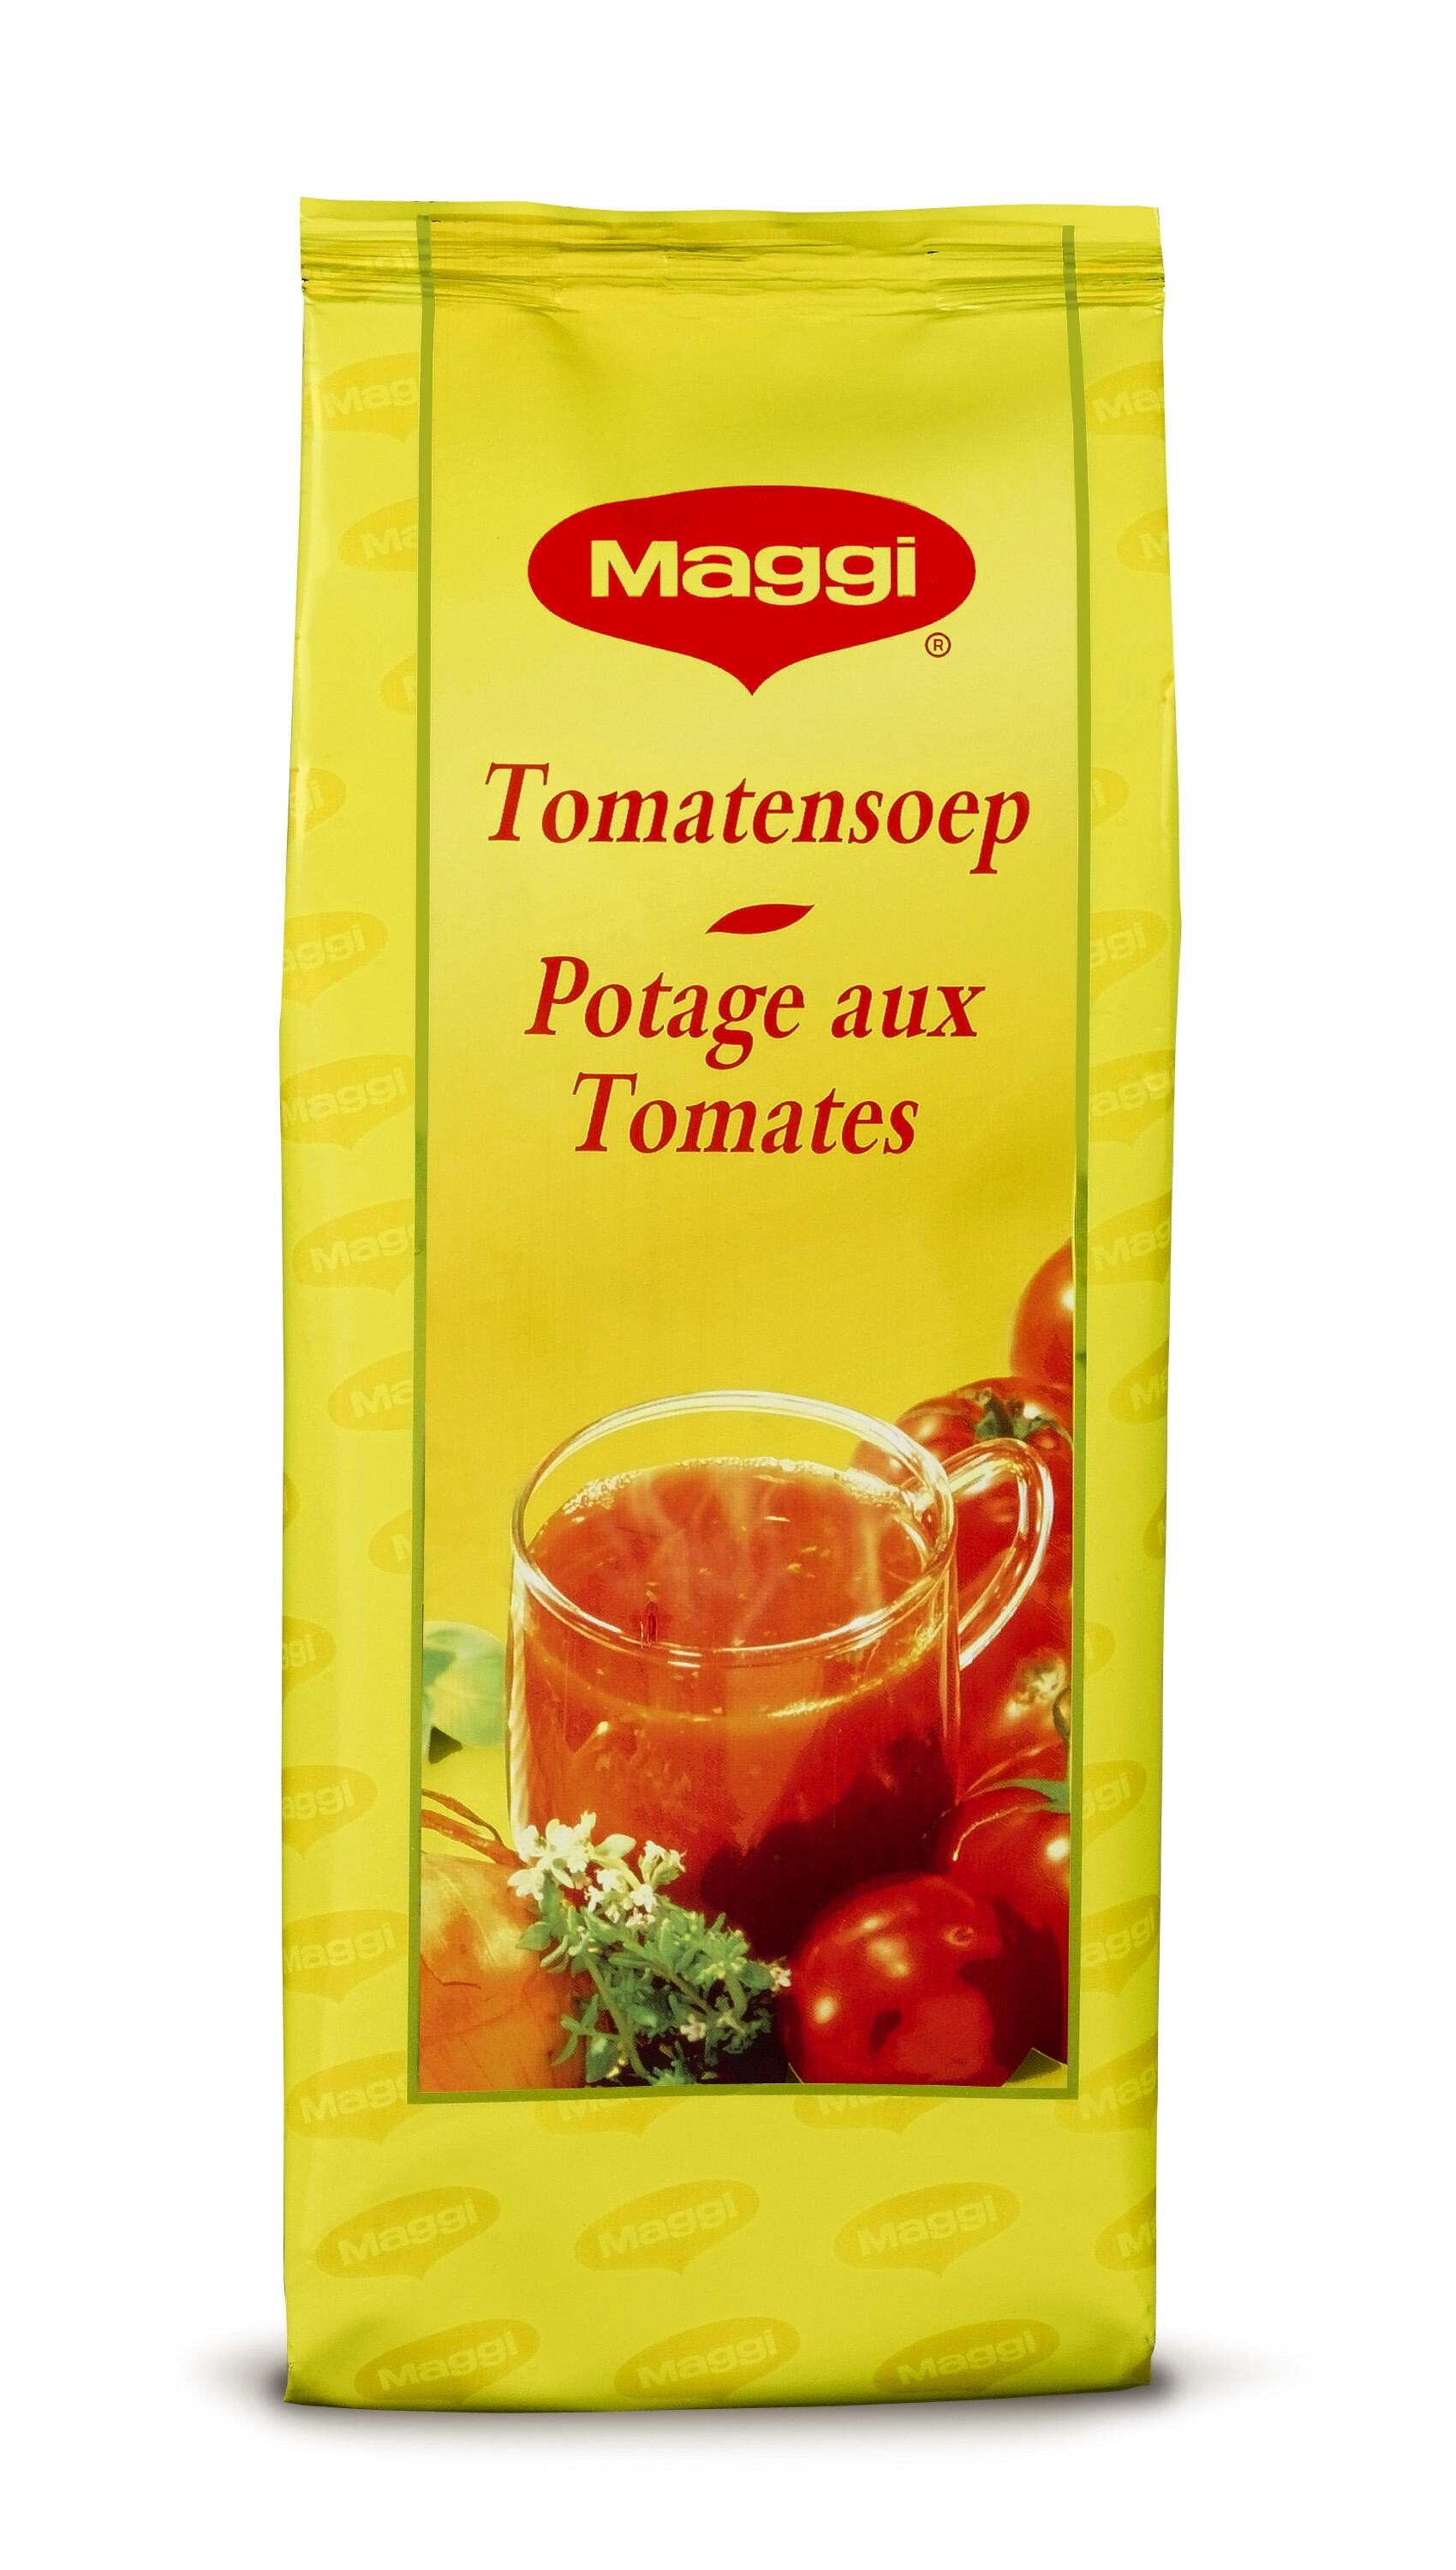 Nestlé Maggi Creamy Tomato Soup Vending Machine 6x1kg